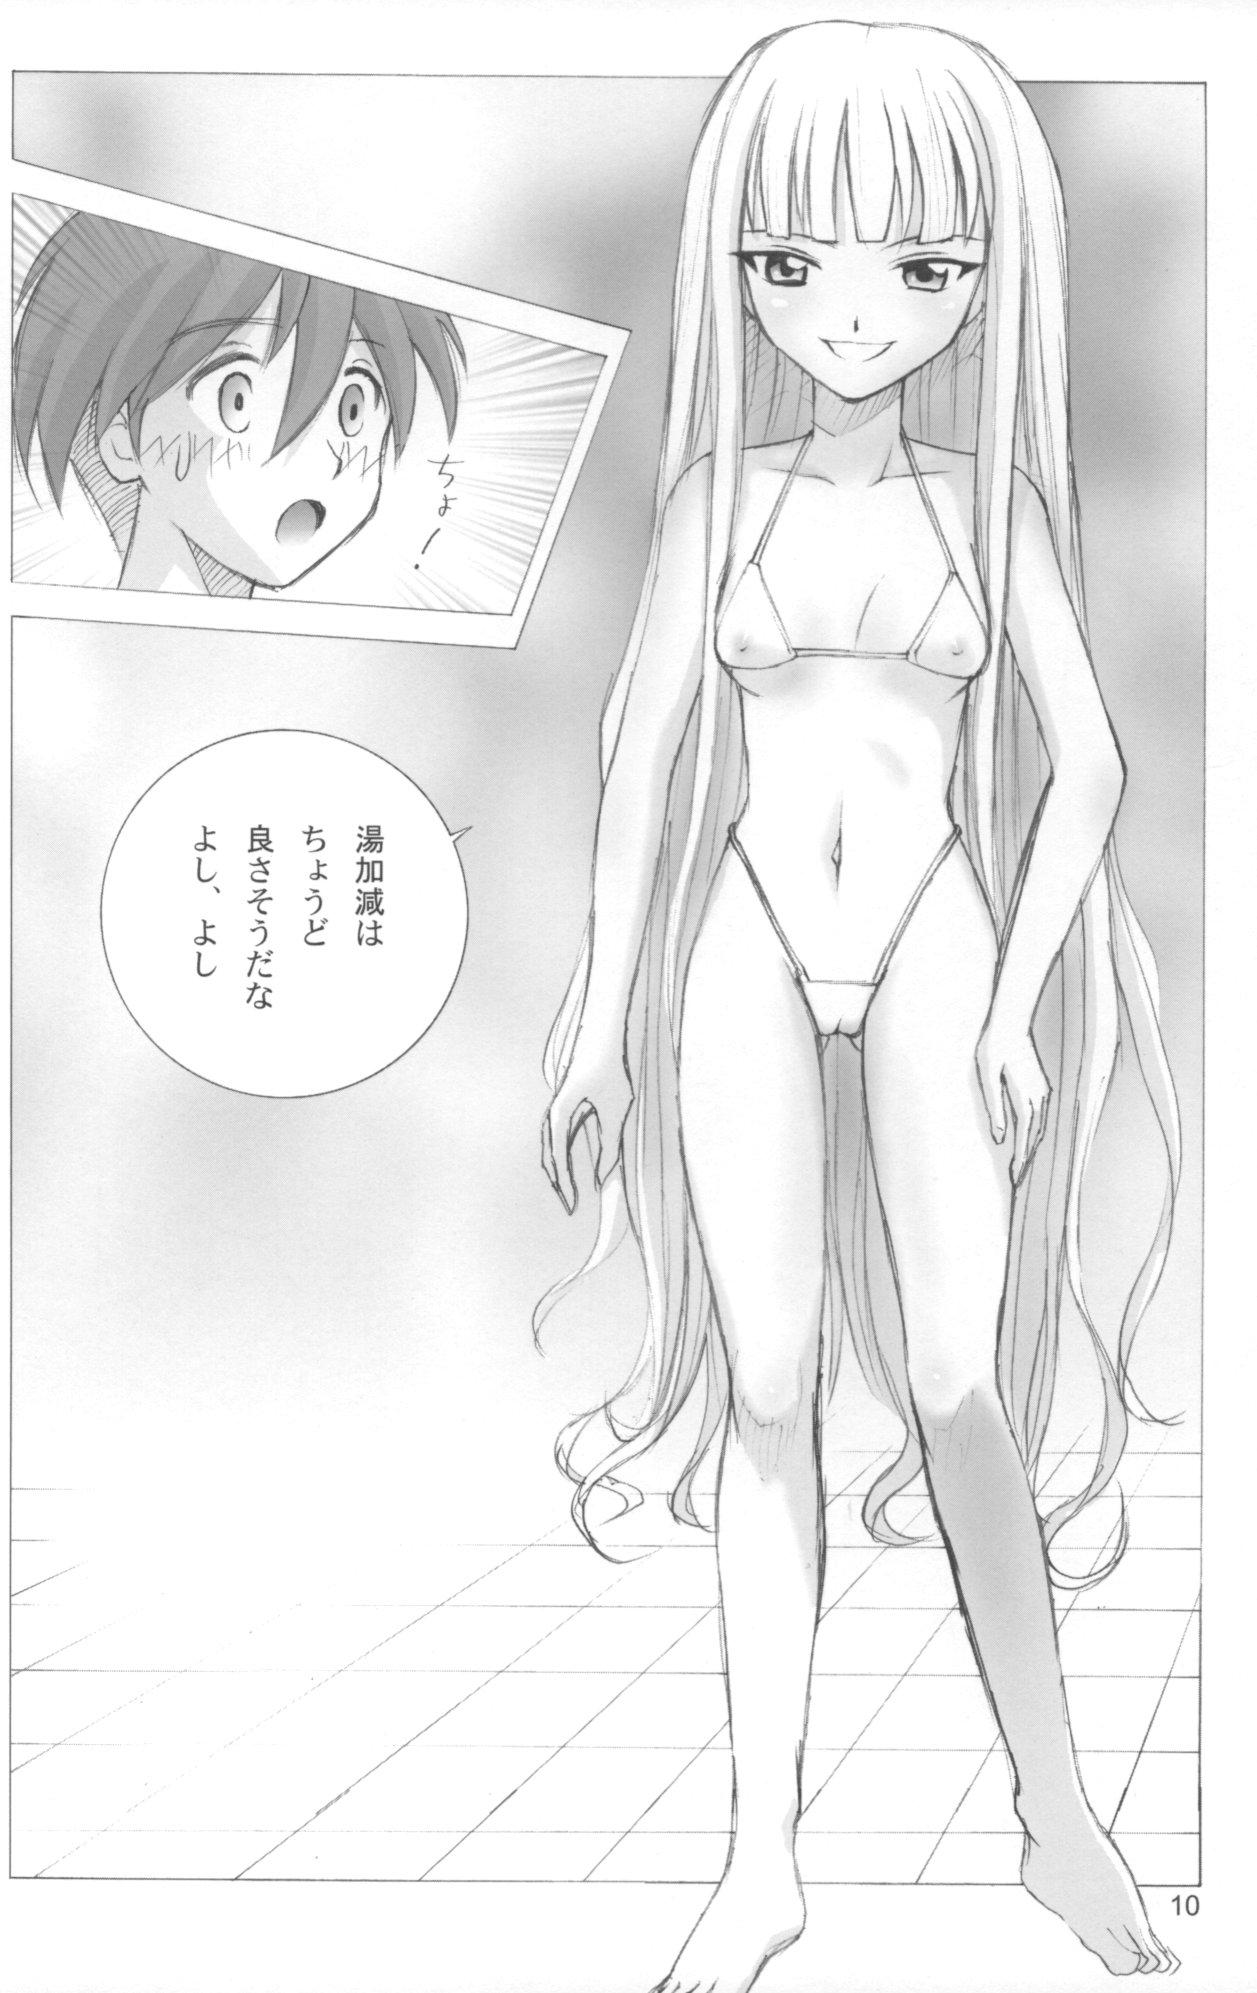 Creampies Evangelica - Mahou sensei negima Groupsex - Page 9